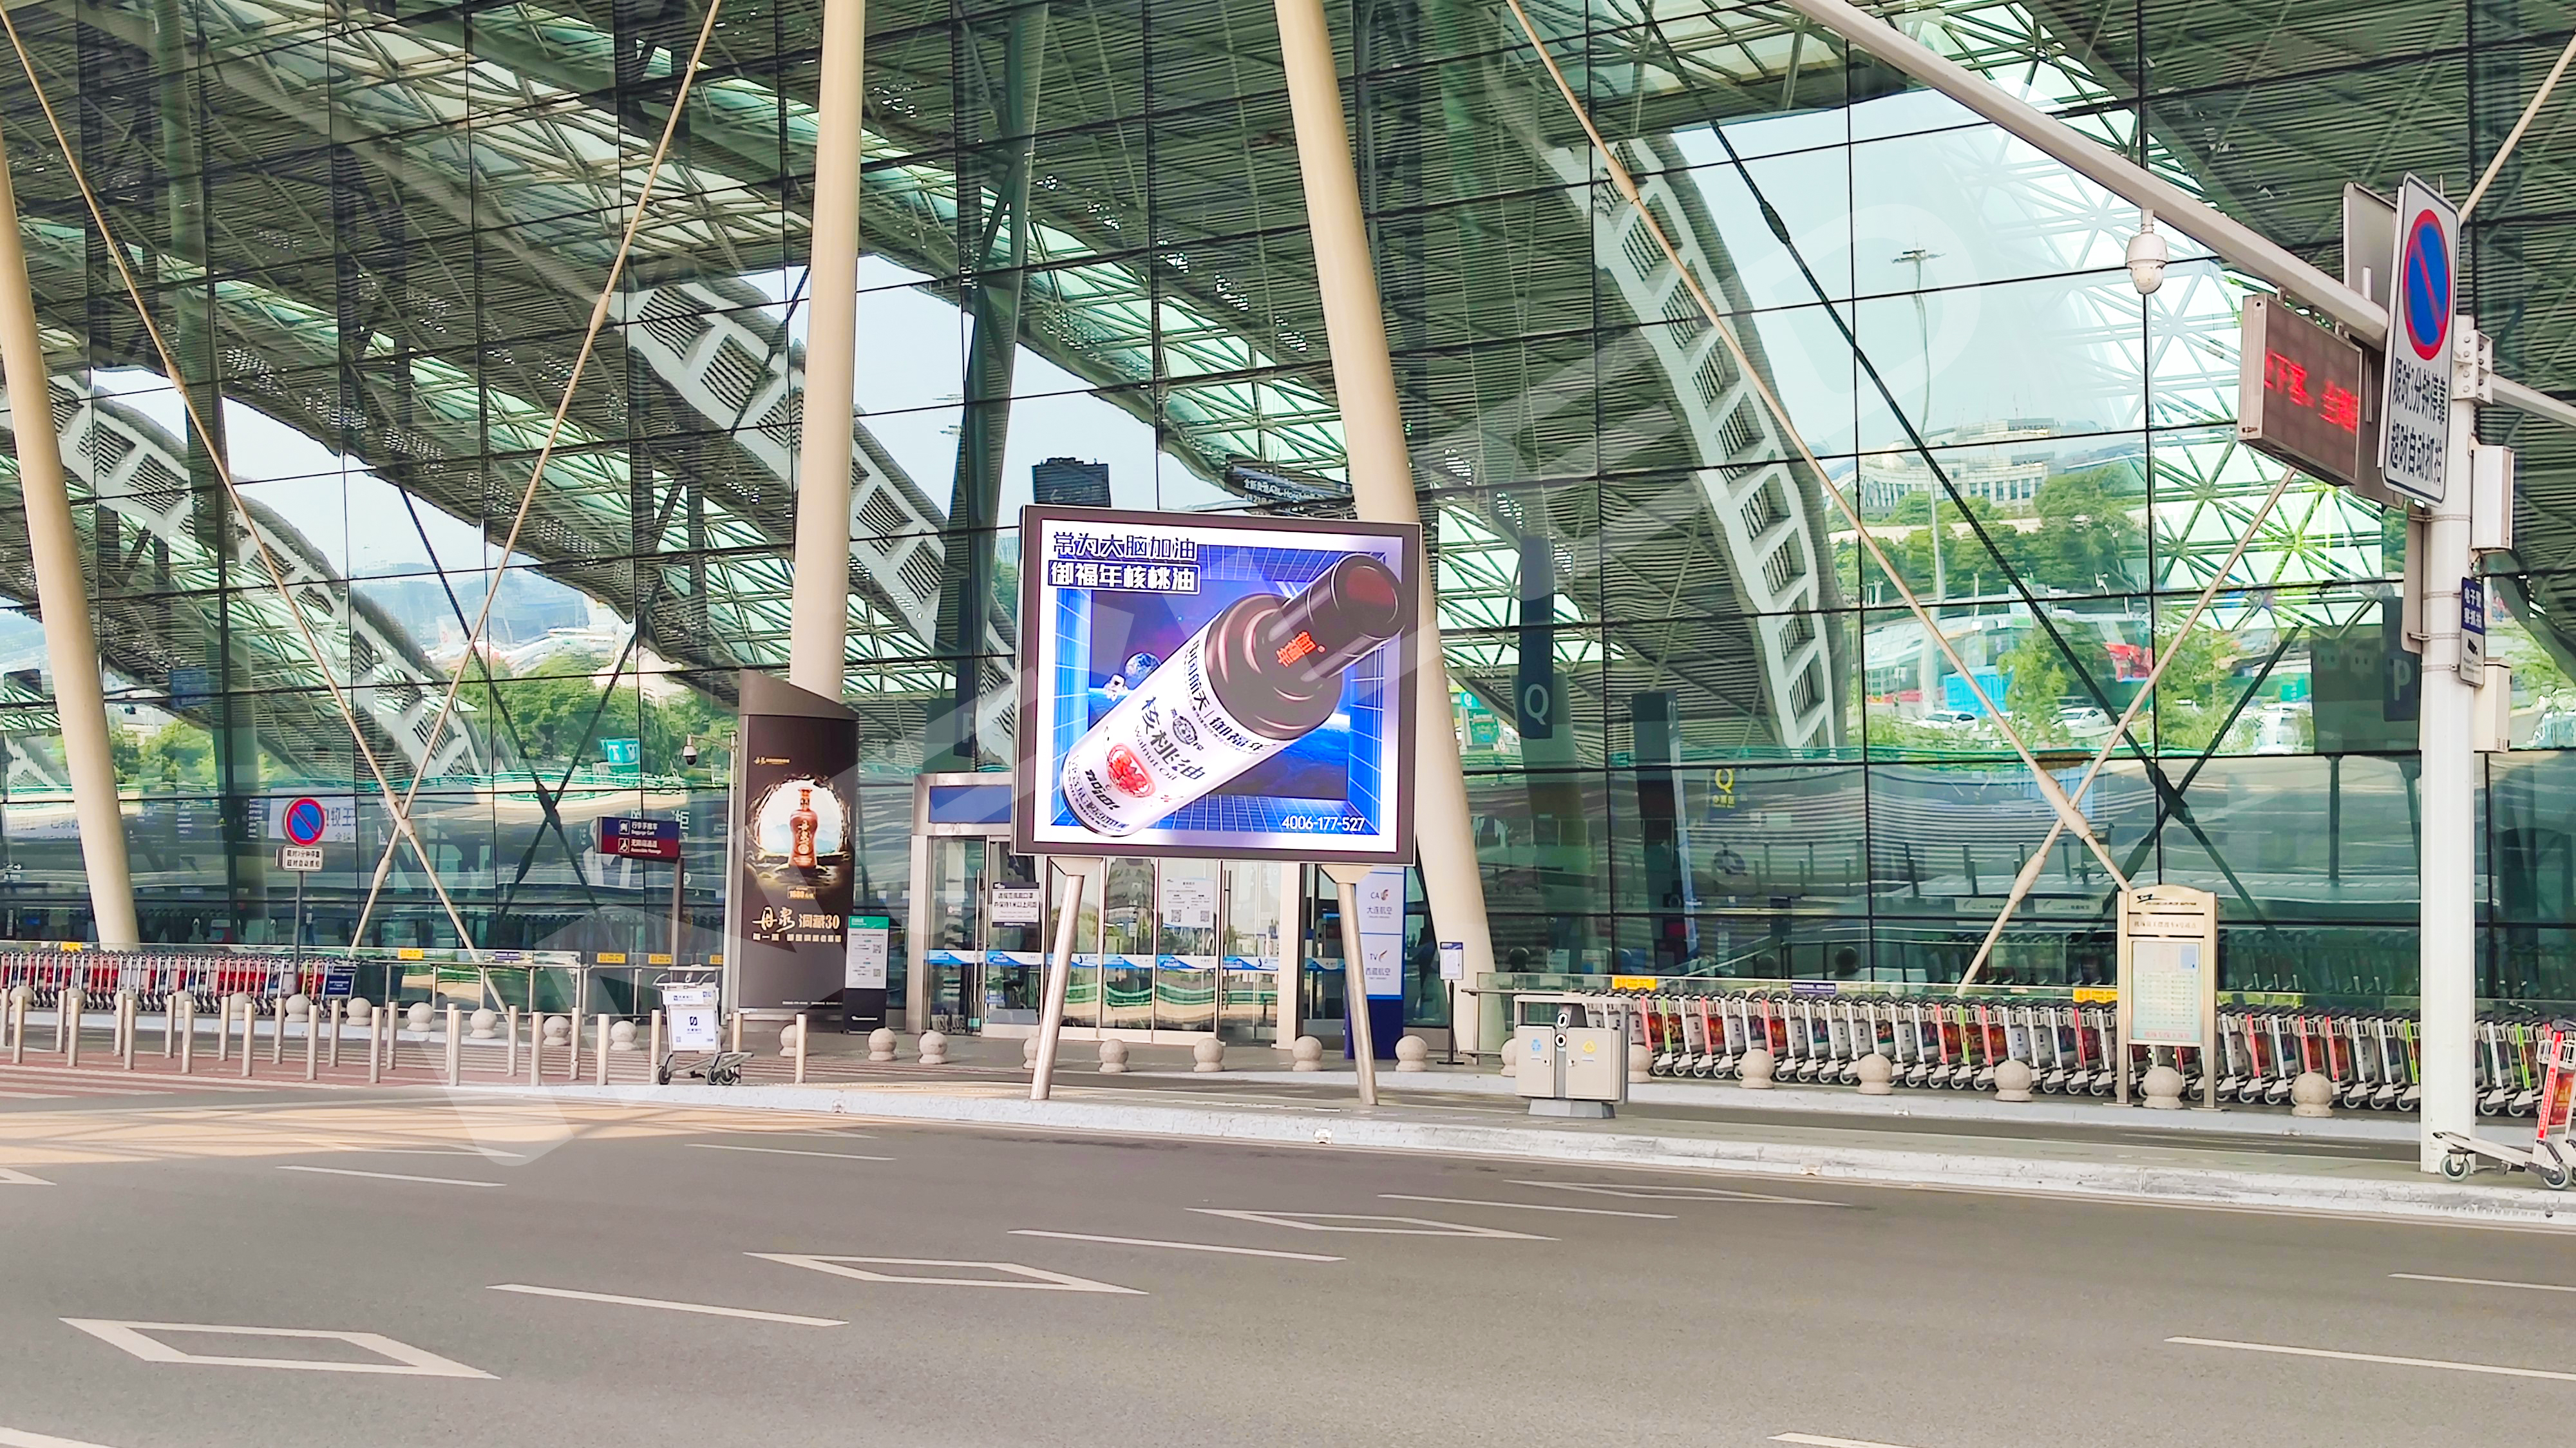 视爵光旭LED显示屏入驻成都双流国际机场T2航站楼外